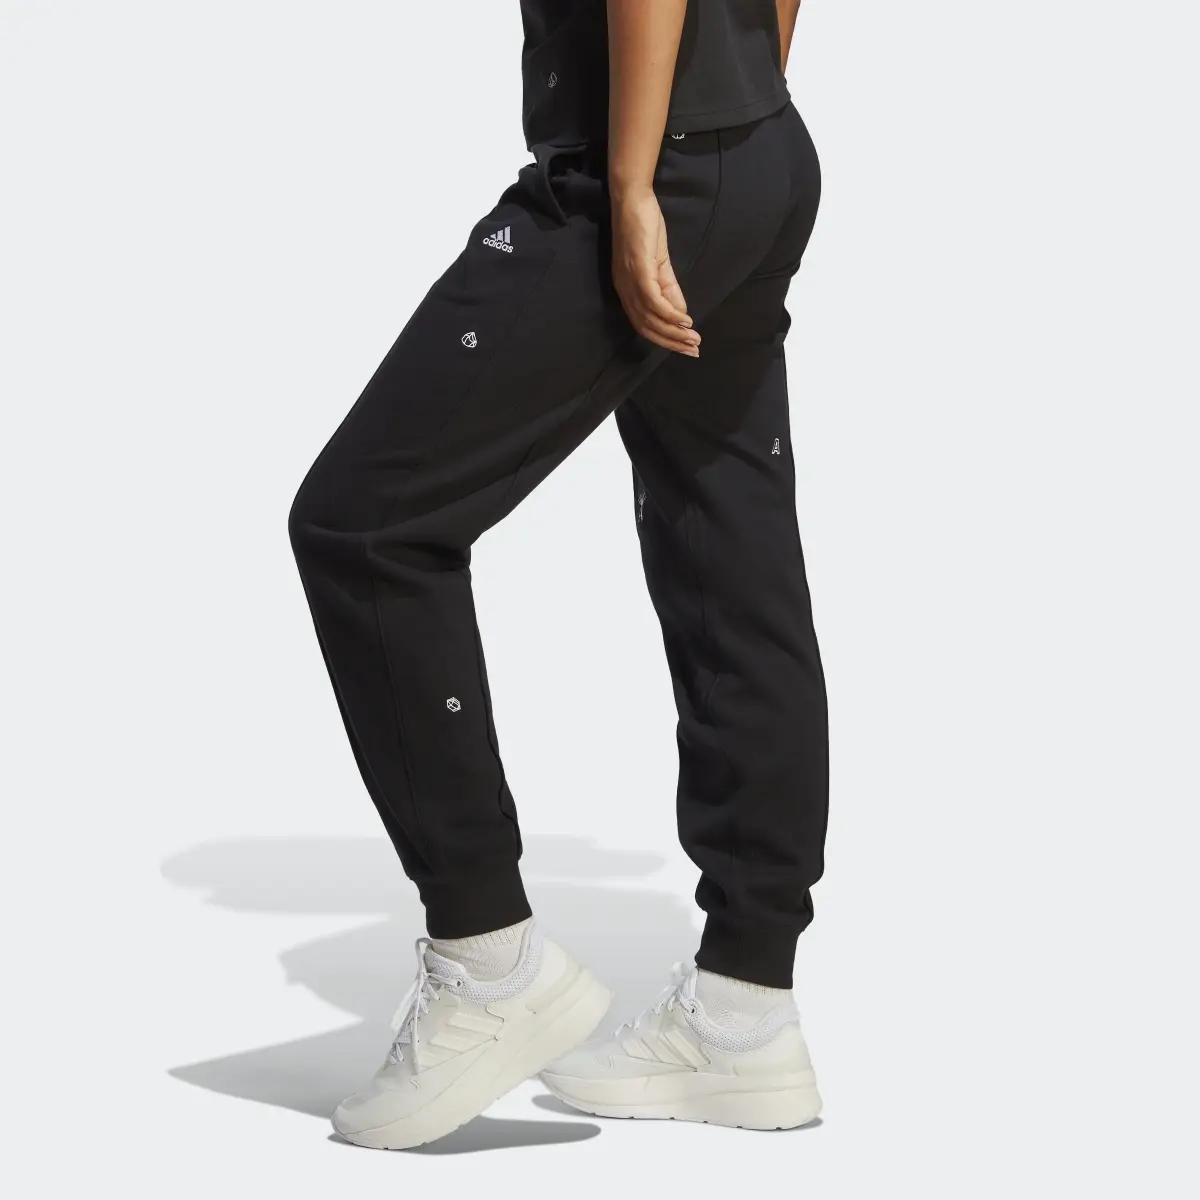 Adidas Pantalon sportswear avec graphismes inspirés de la lithothérapie. 2